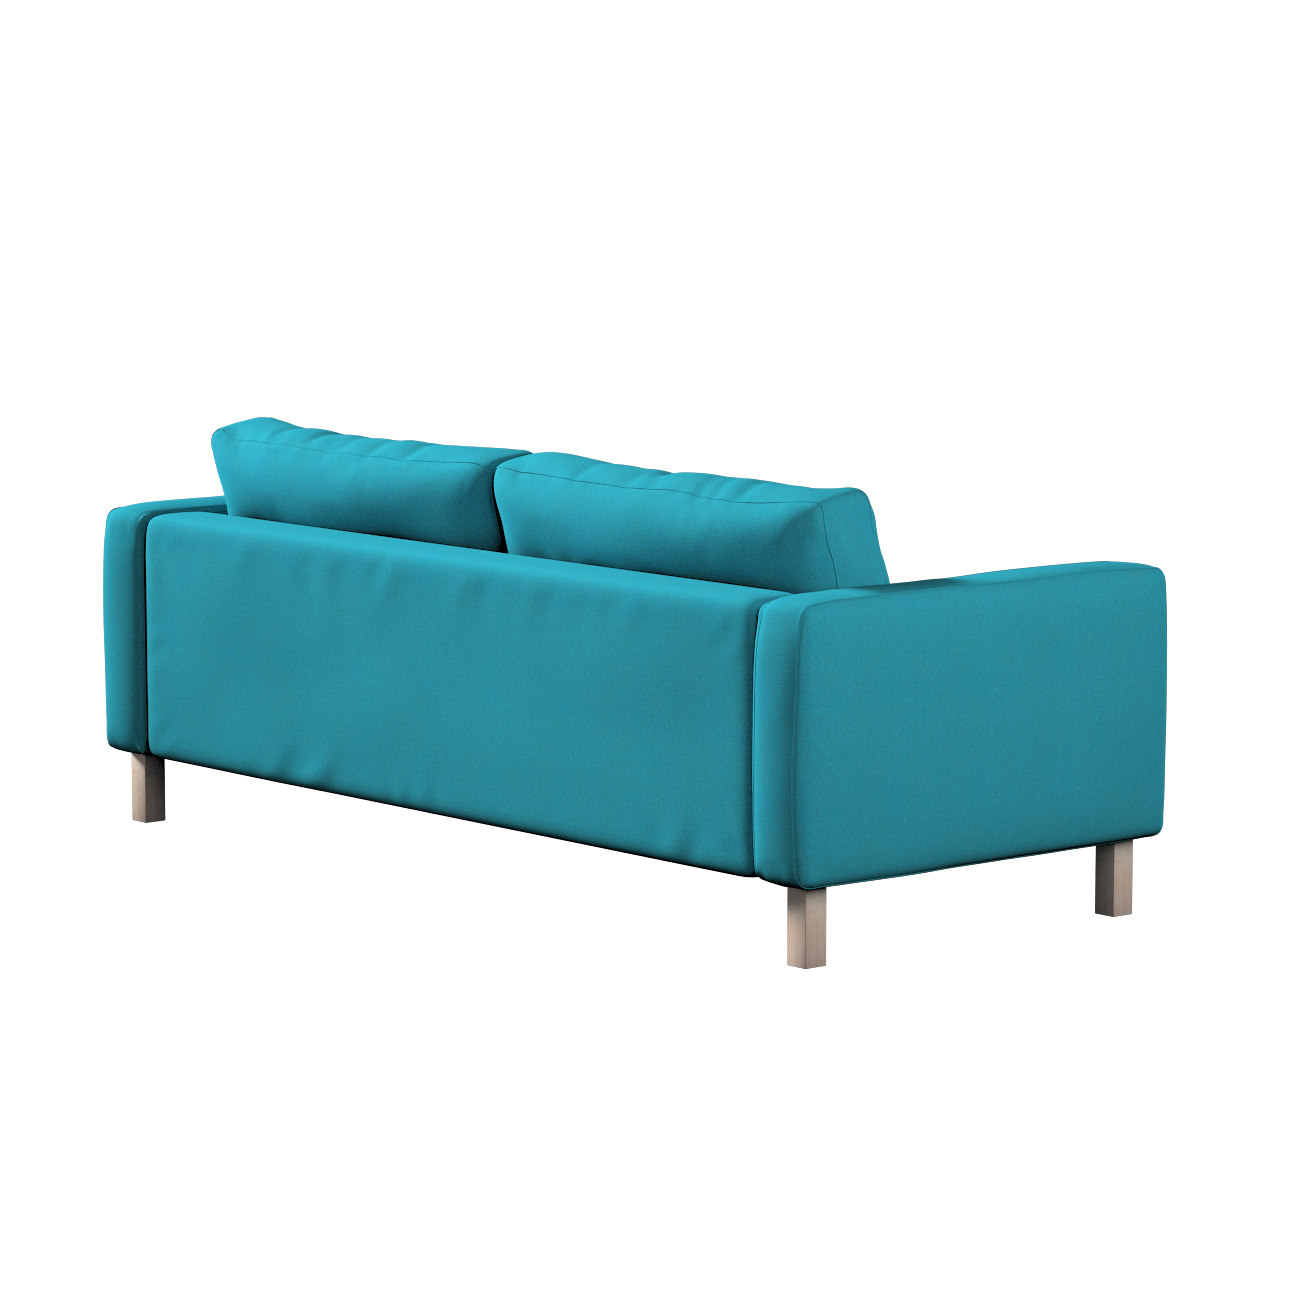 Bezug für Karlstad 3-Sitzer Sofa nicht ausklappbar, kurz, türkis, Bezug für günstig online kaufen